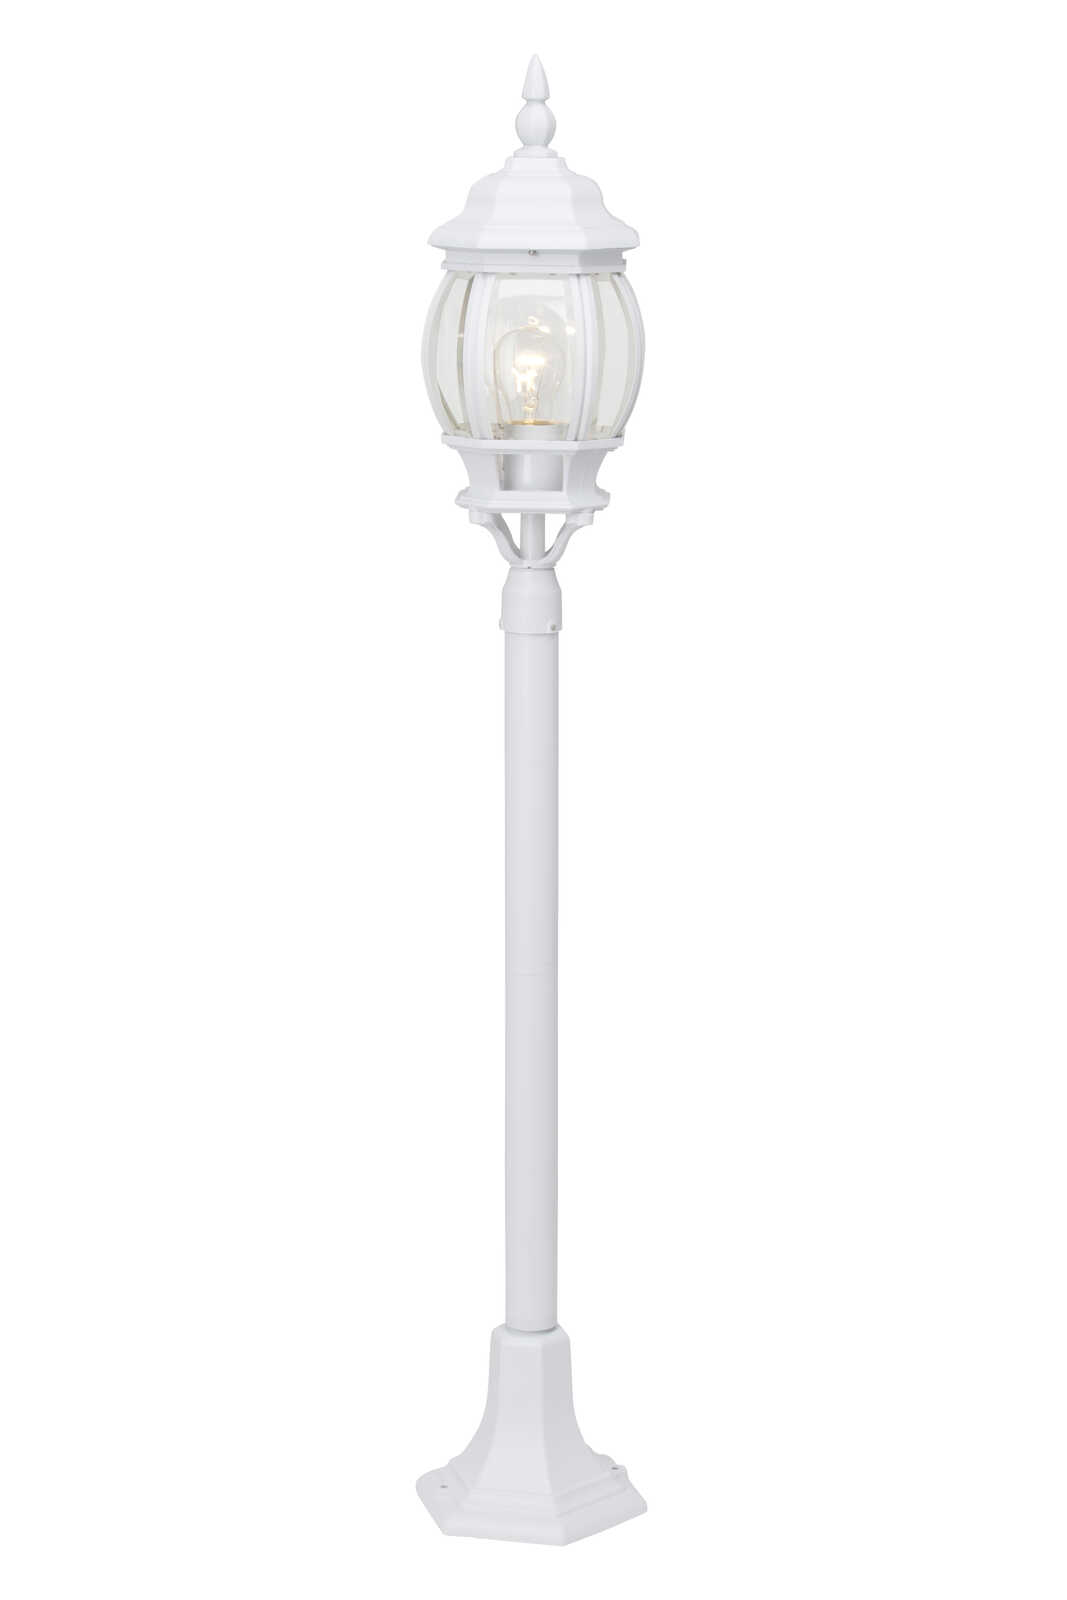             Glass outdoor floor lamp - John 1 - White
        